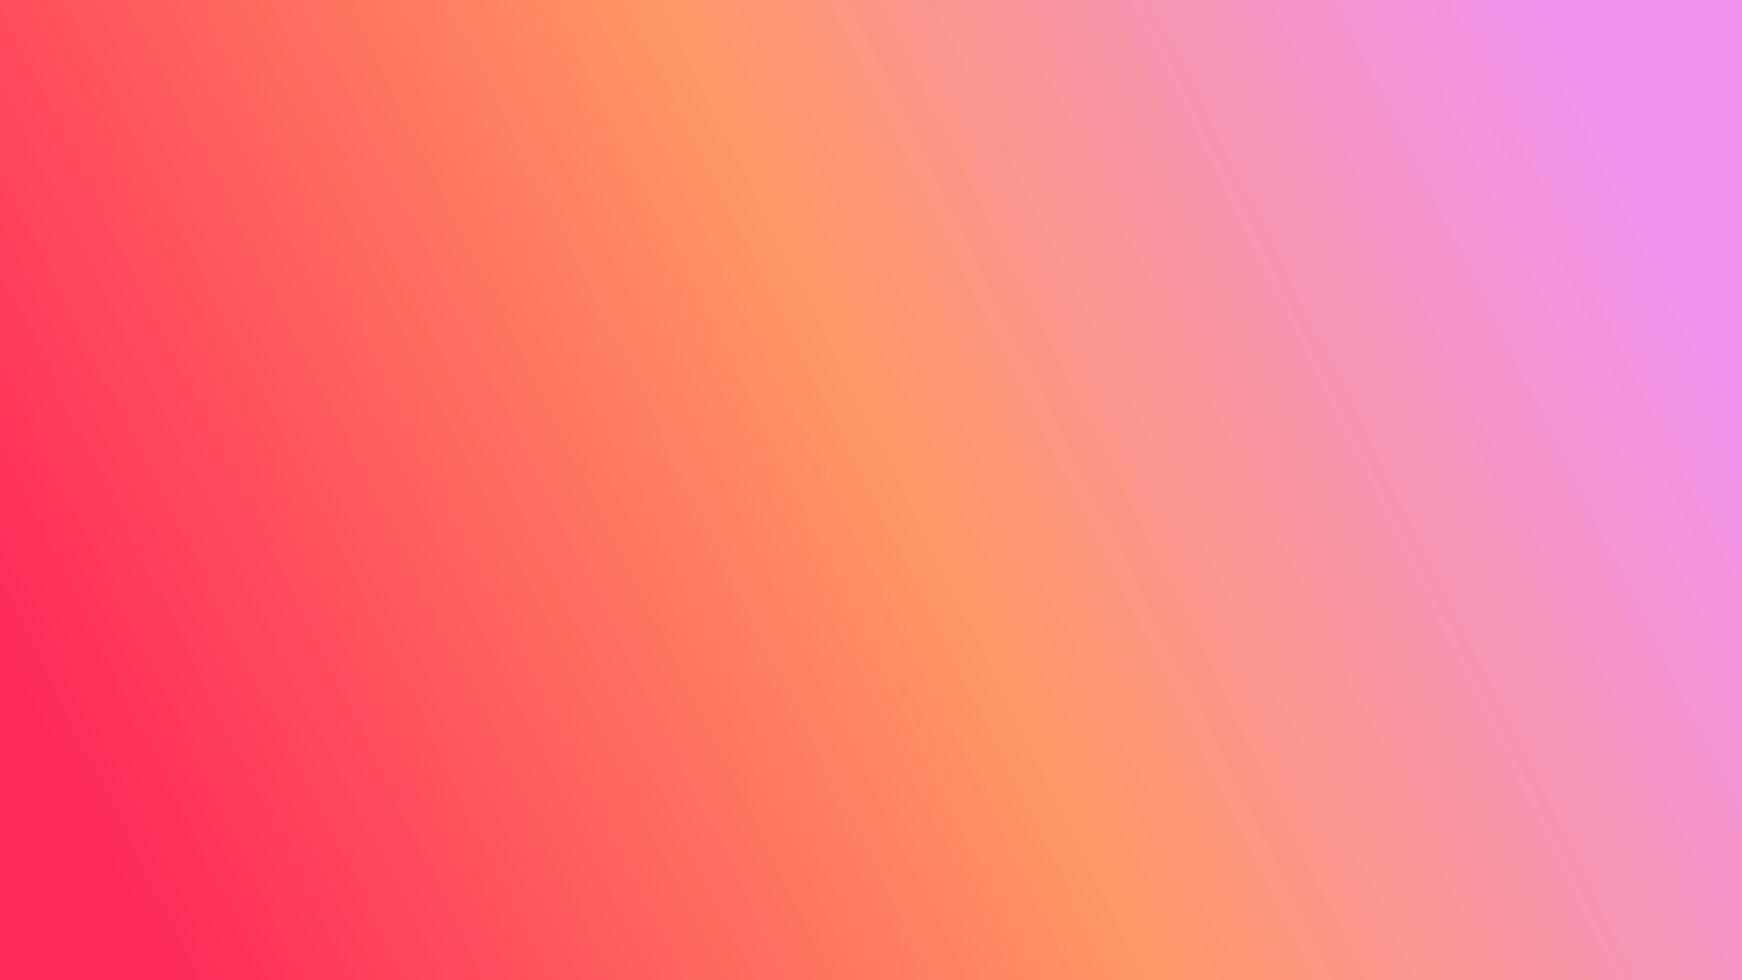 Free Vector  Gradient blur pink orange phone wallpaper vector